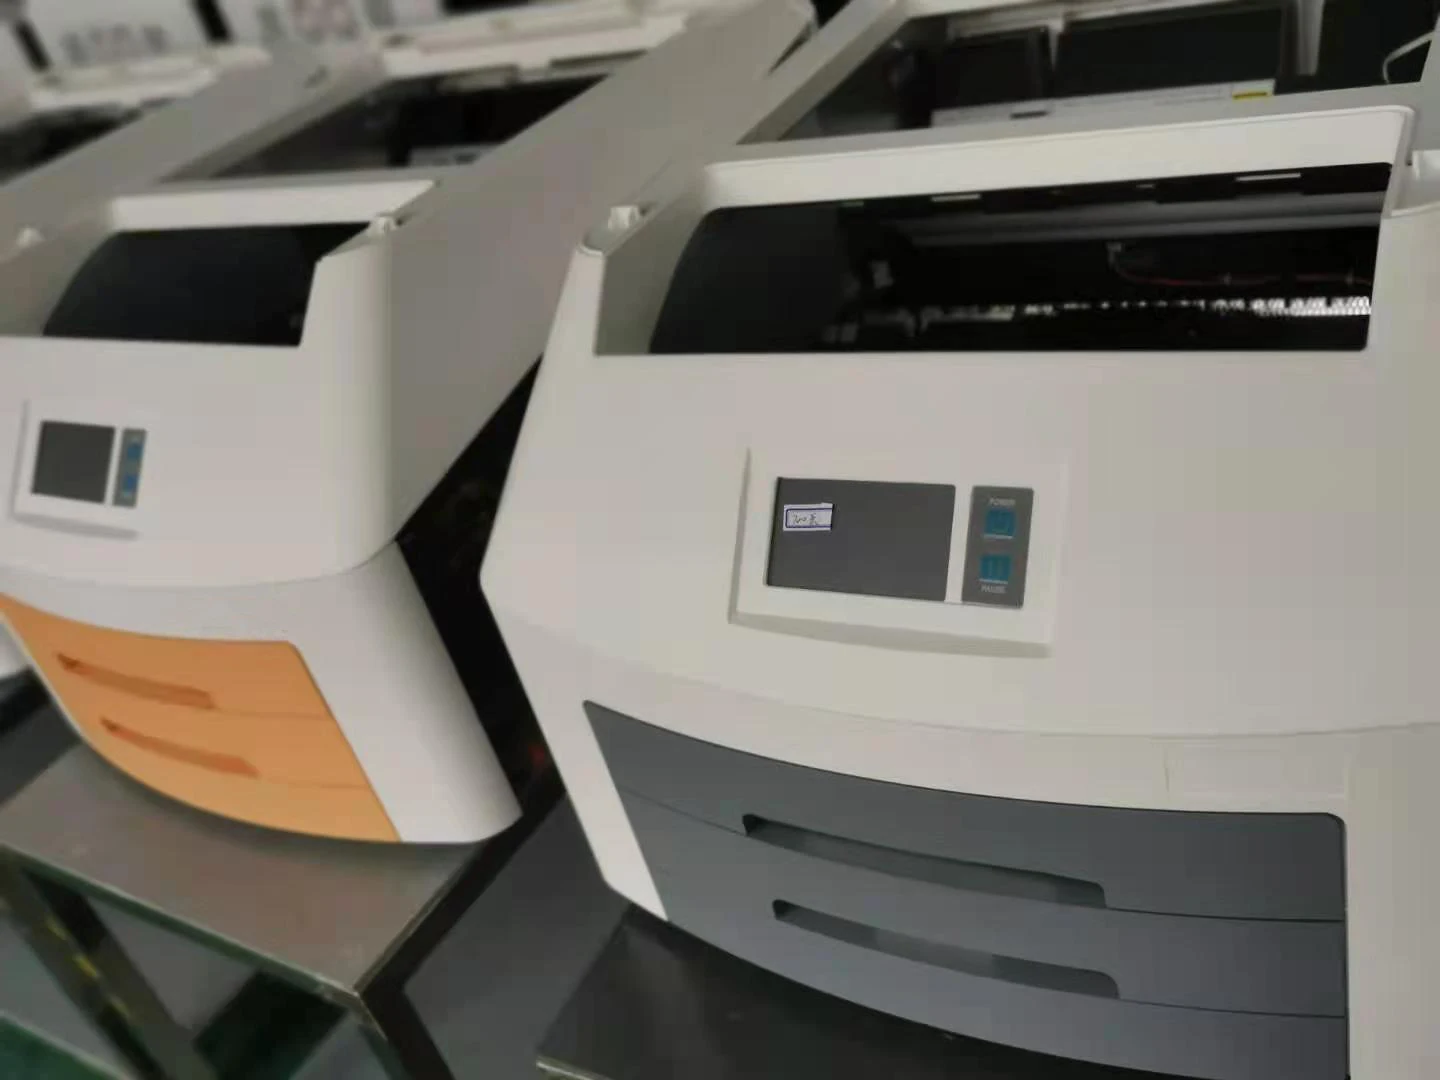 
Самый дешевый сухой пленочный принтер для рентгена/медицинского пленочного принтера, точный MSDY03 